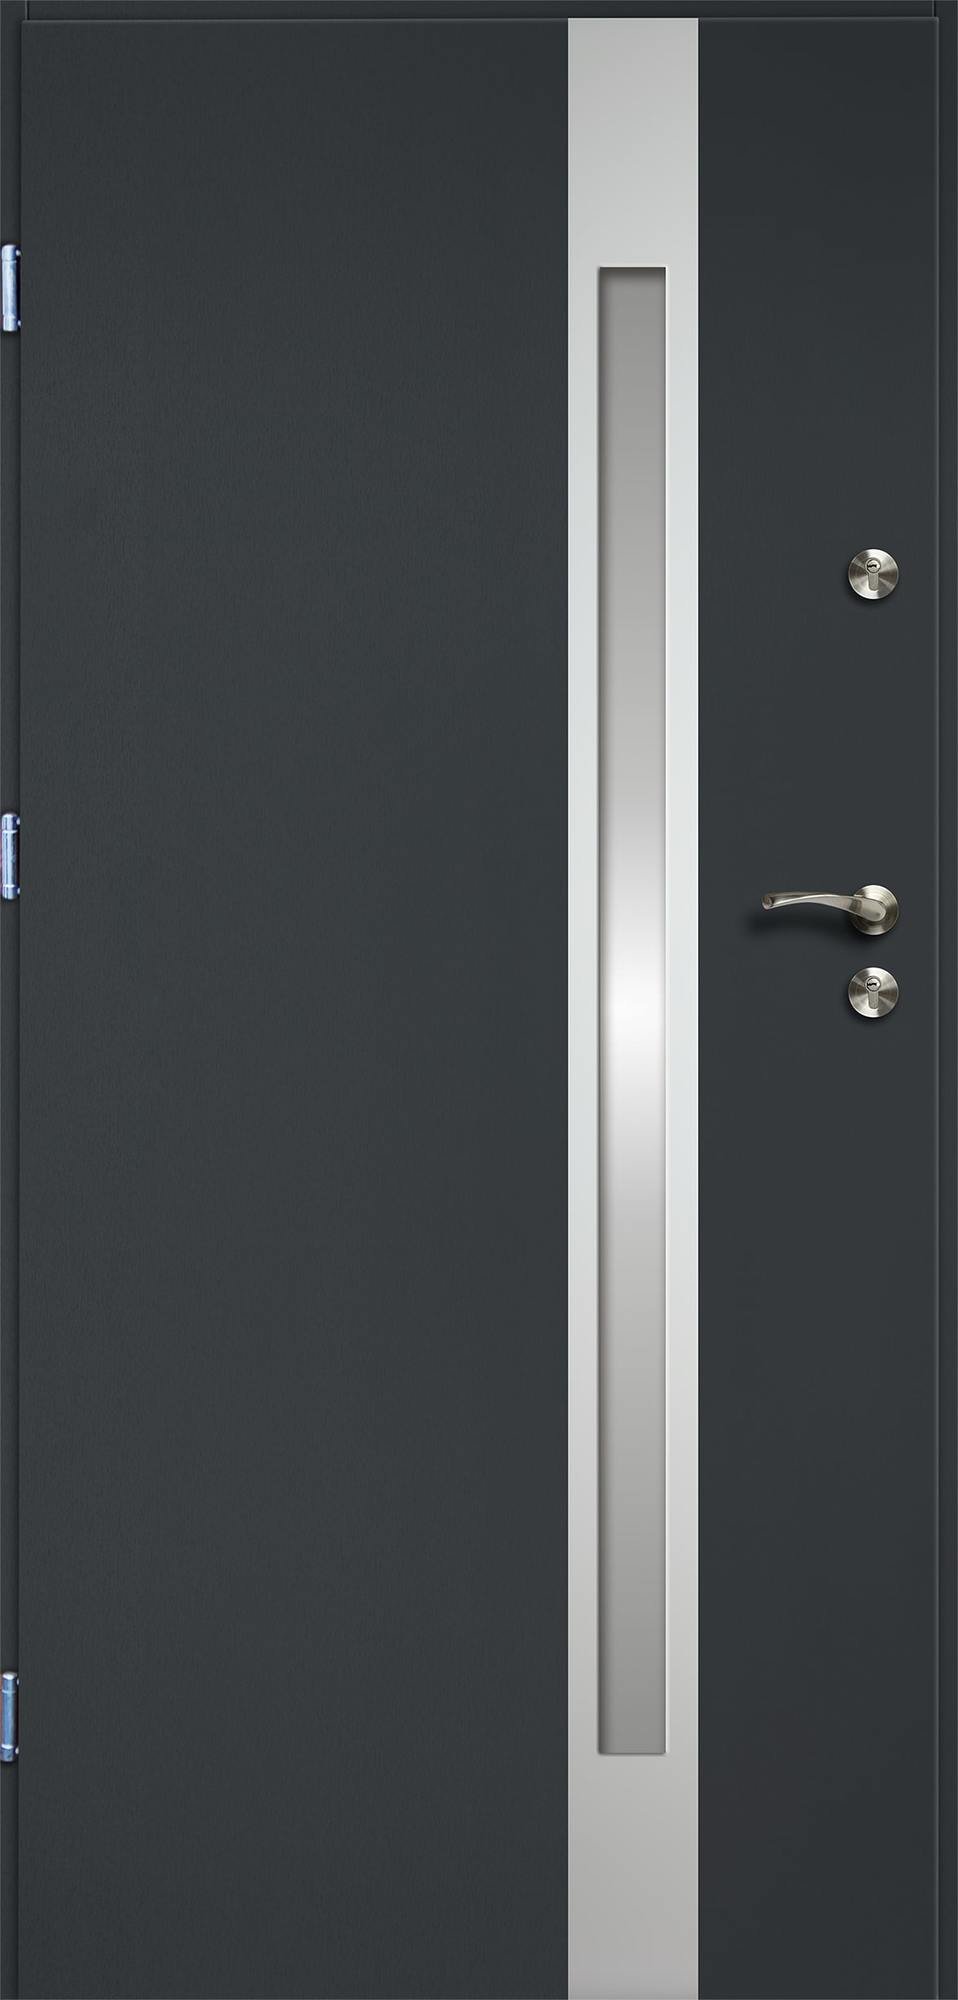 Lauko durys RADEX VERTE II, antracito sp., 900 x 2070 mm, kairė - 2vnt